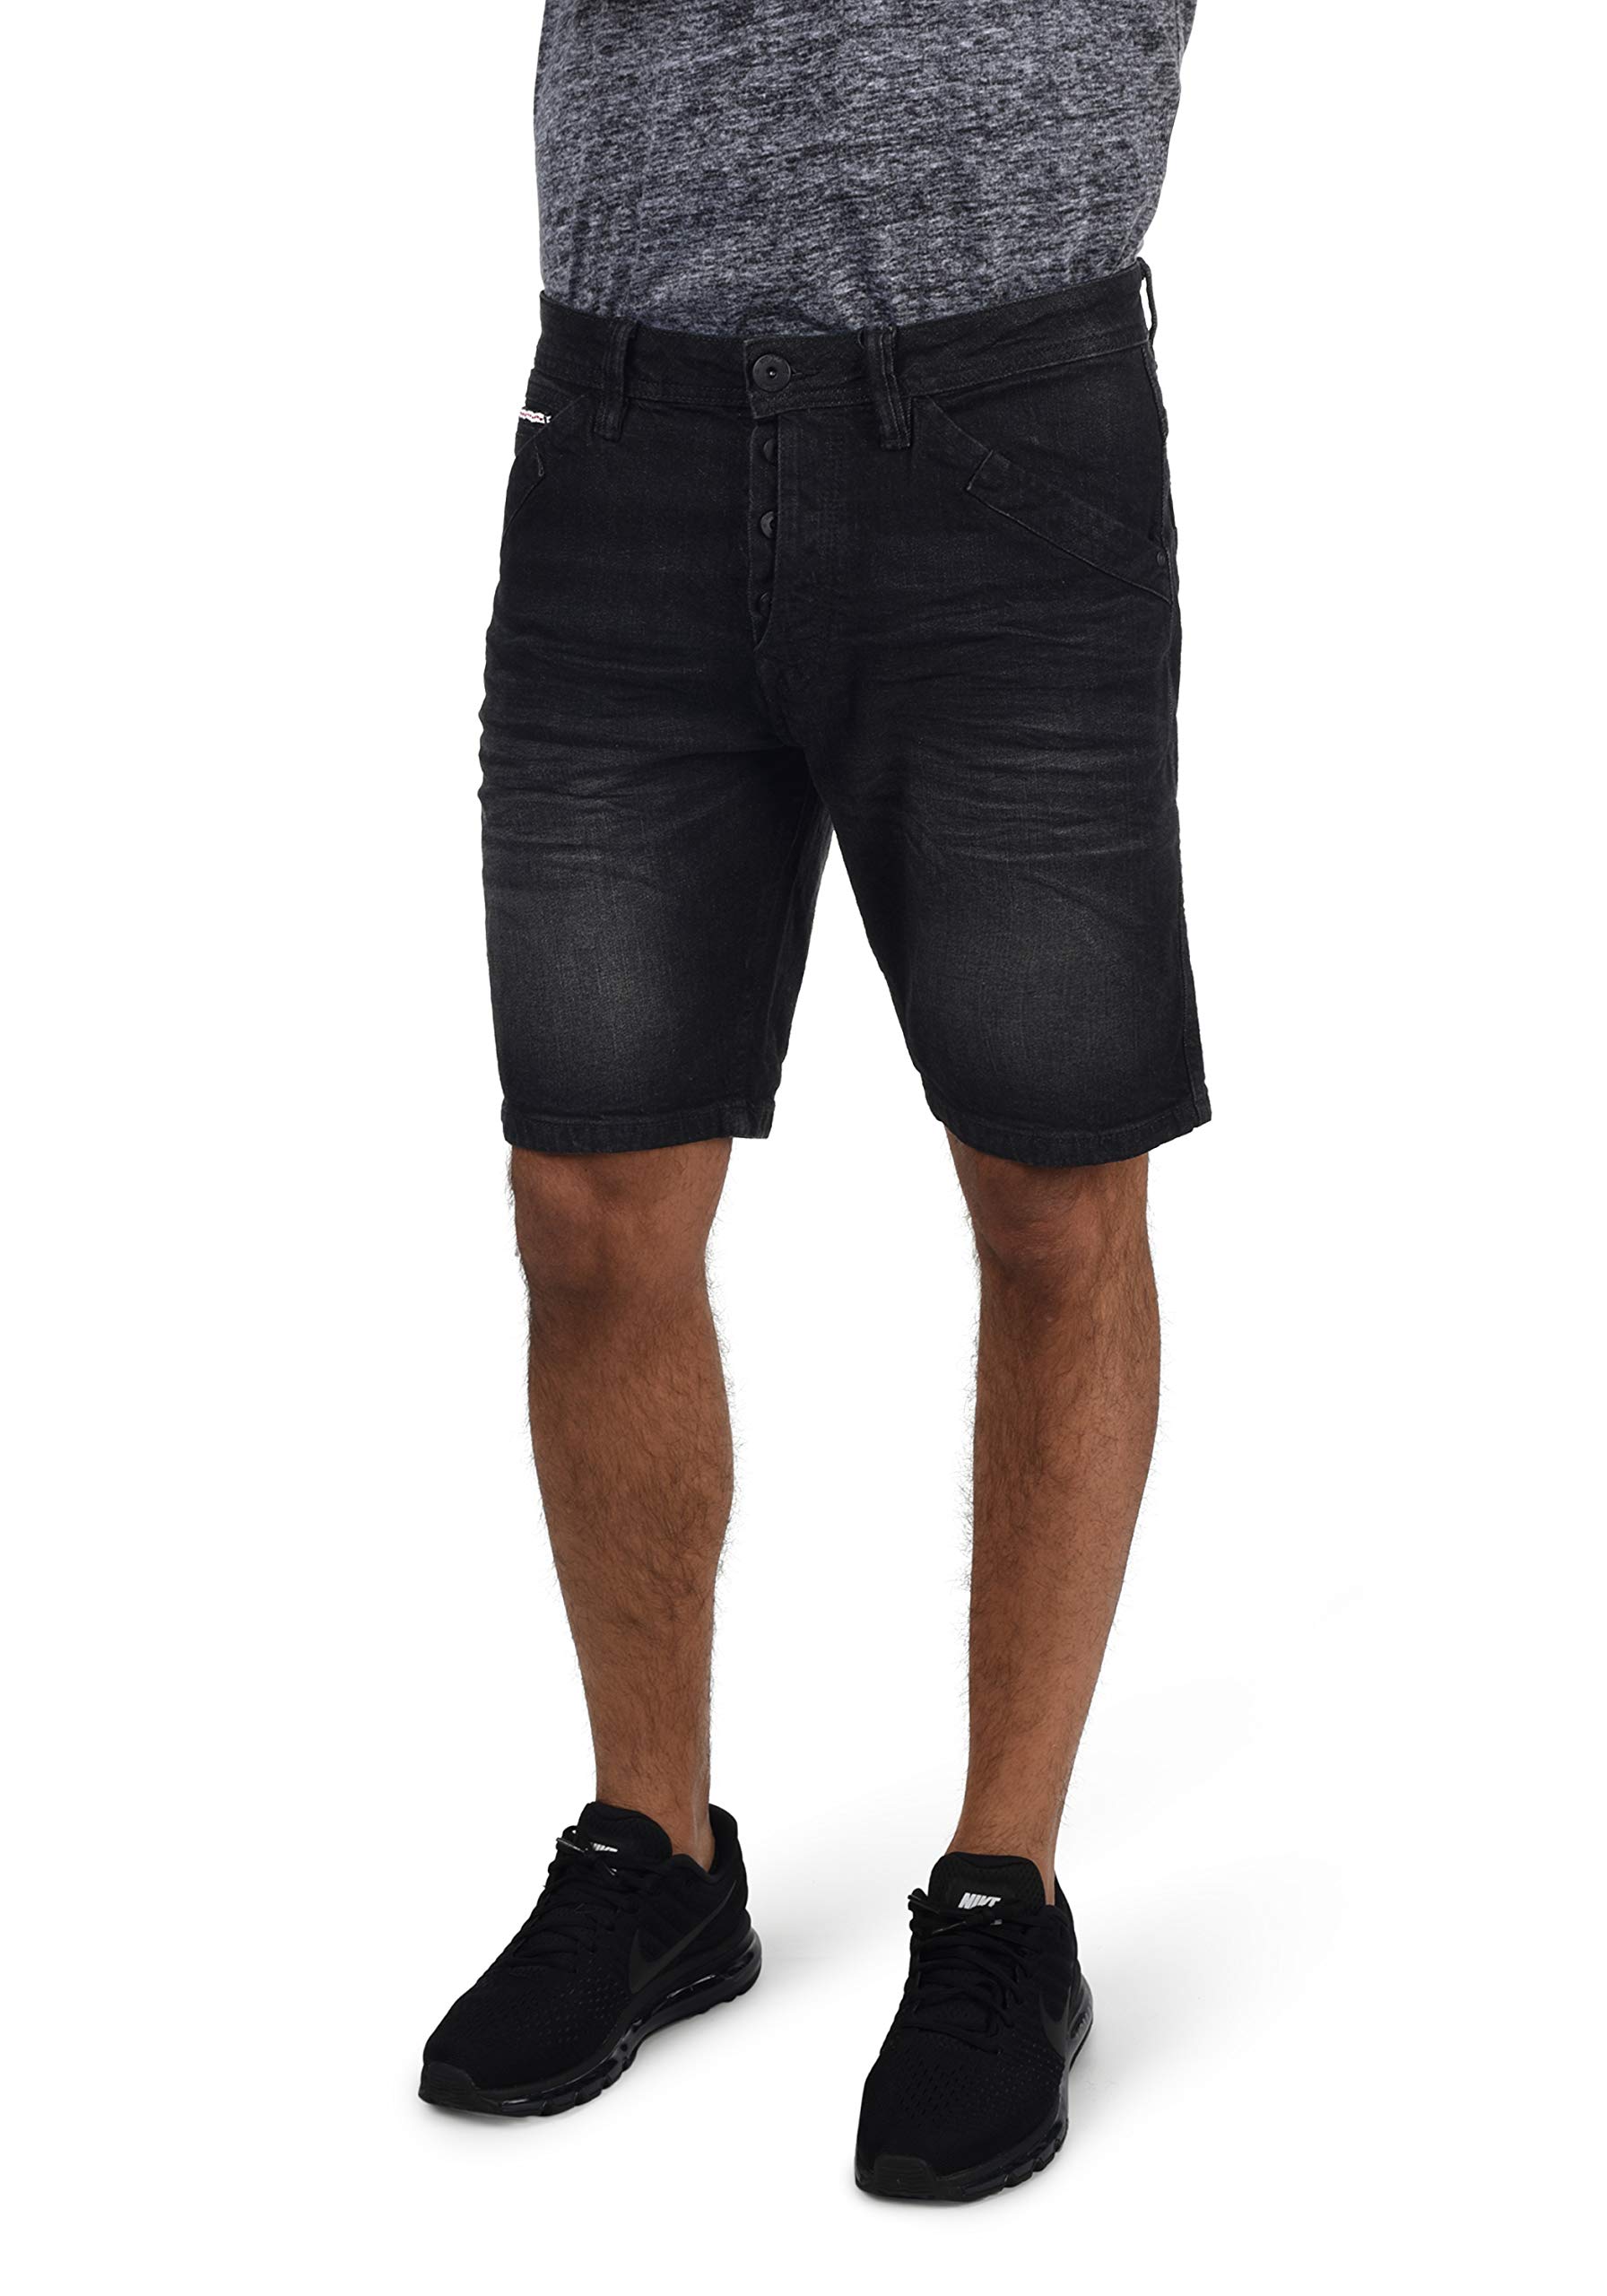 Indicode IDAlessio Herren Jeans Shorts Kurze Denim Hose mit Stretch Regular Fit, Größe:M, Farbe:Black (999)